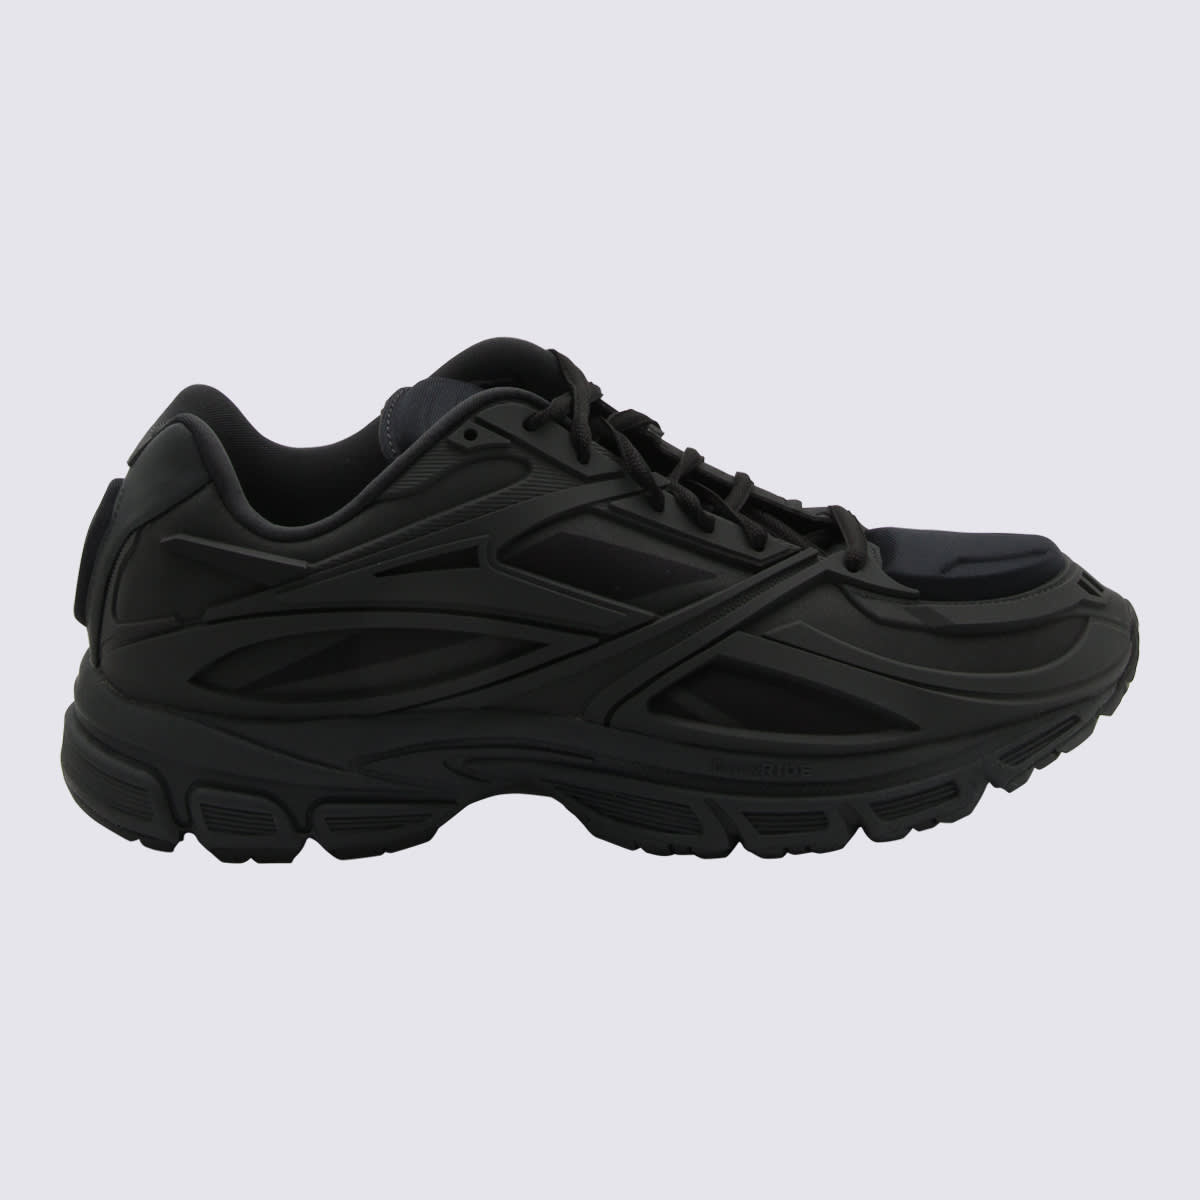 Reebok Black Sneakers